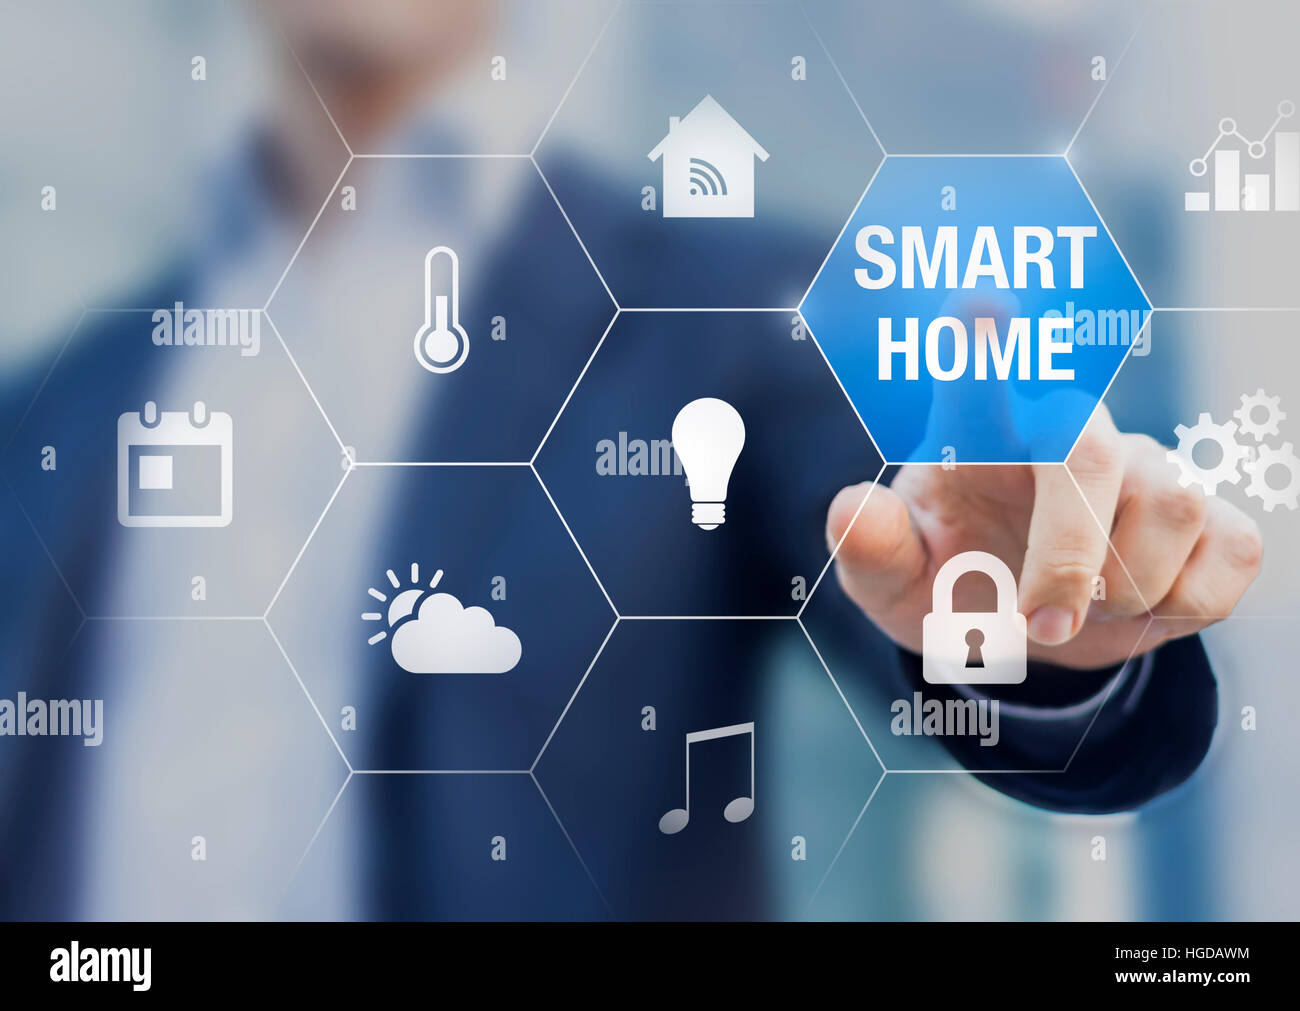 Smart home concept d'automatisation avec des icônes indiquant les fonctionnalités de cette nouvelle technologie et d'une personne touchant un bouton Banque D'Images